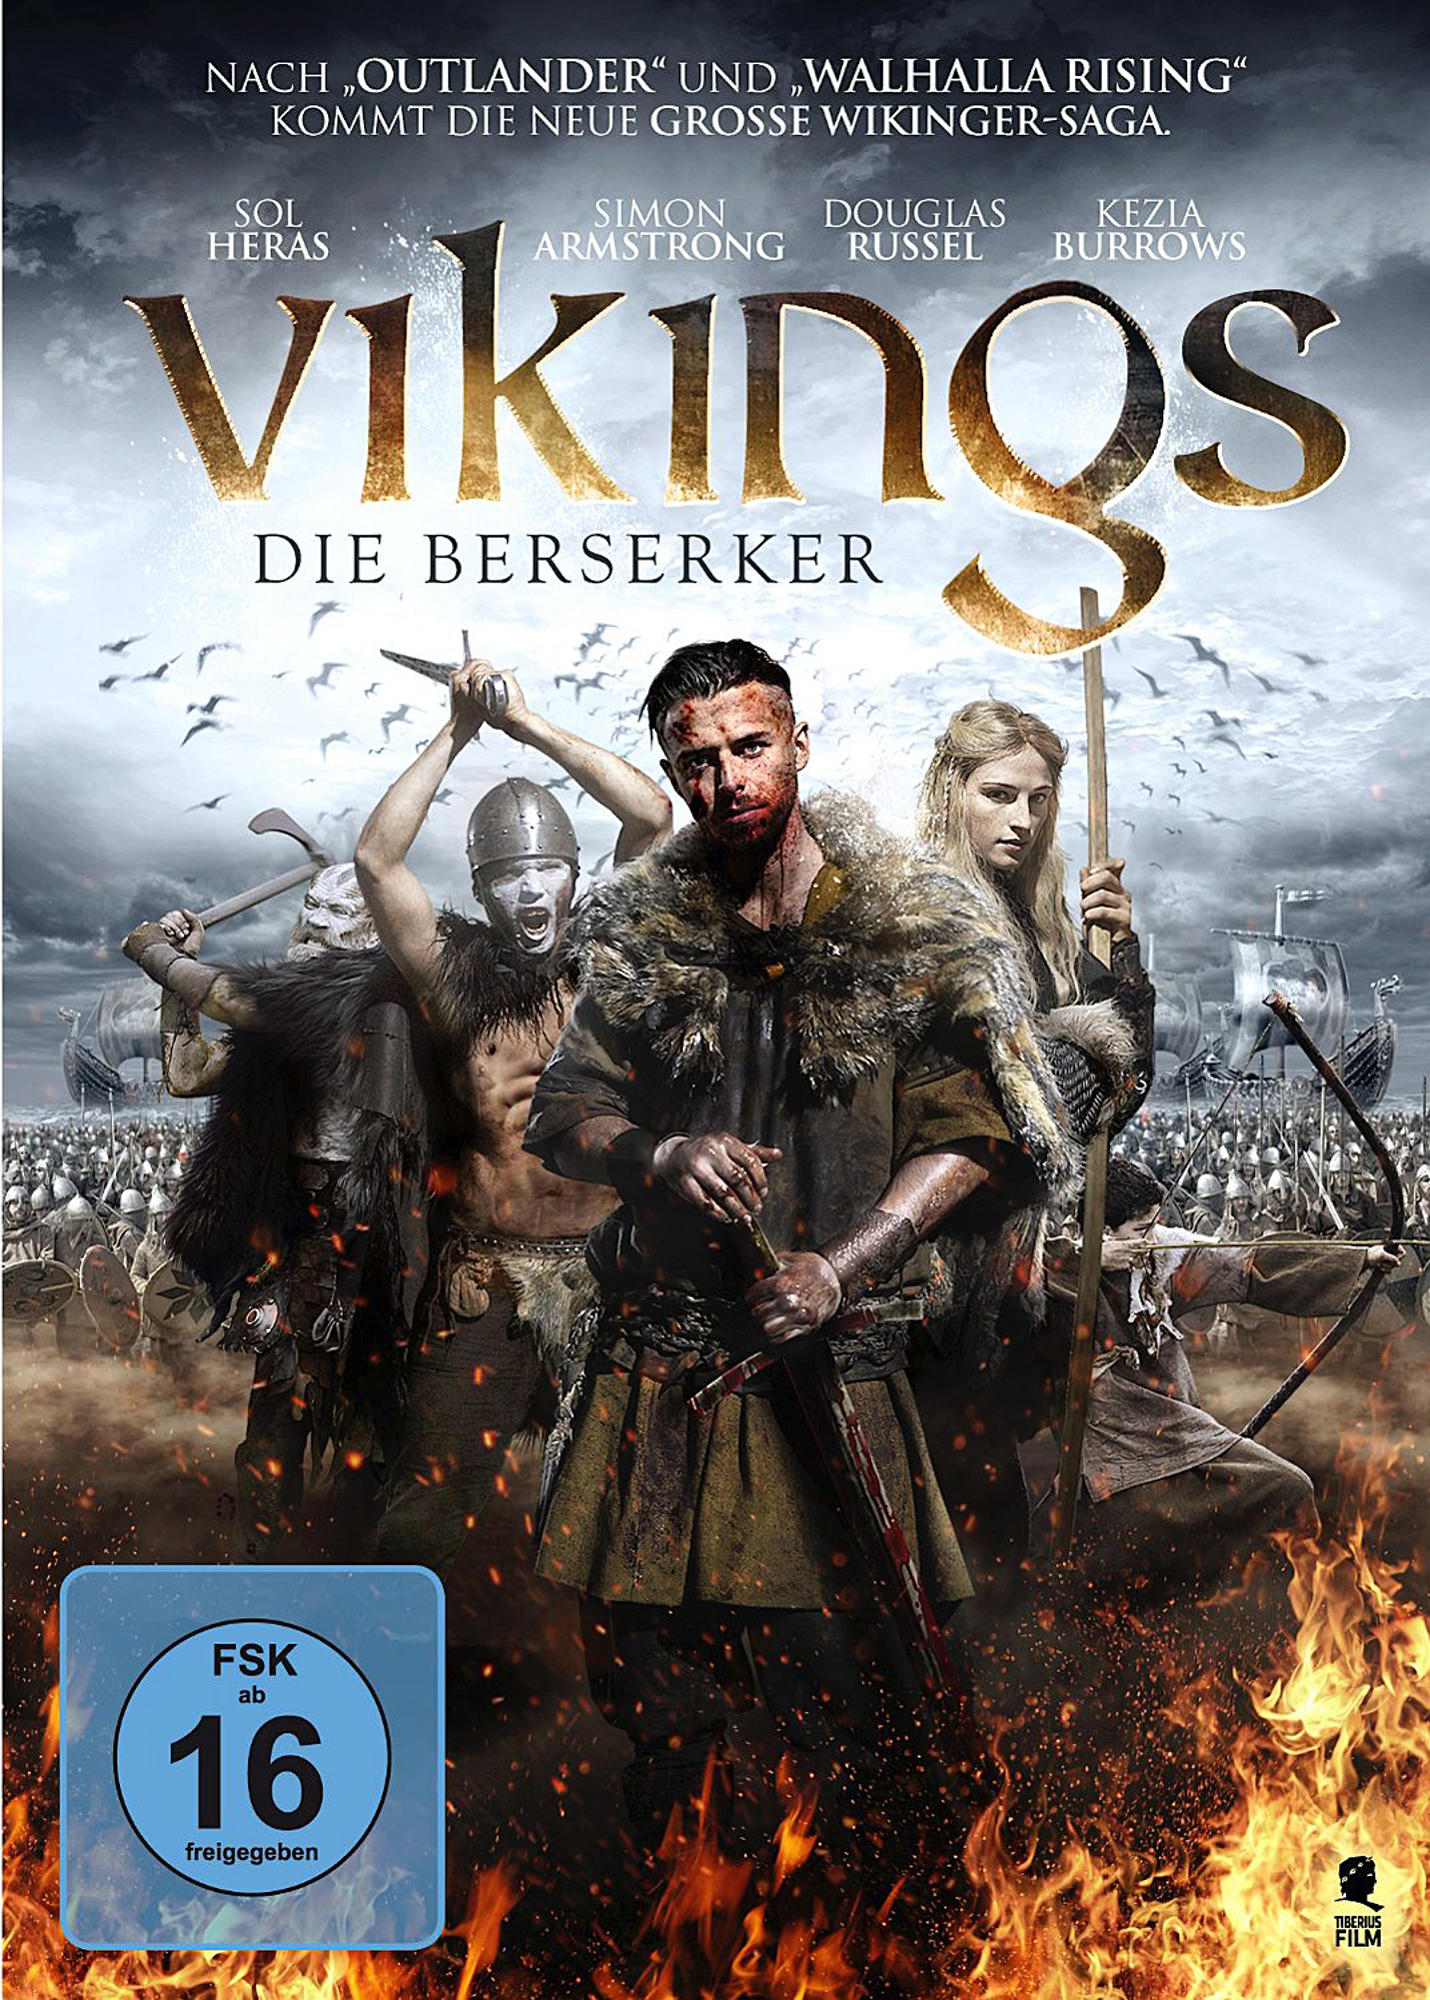 Vikings Die - Berserker DVD